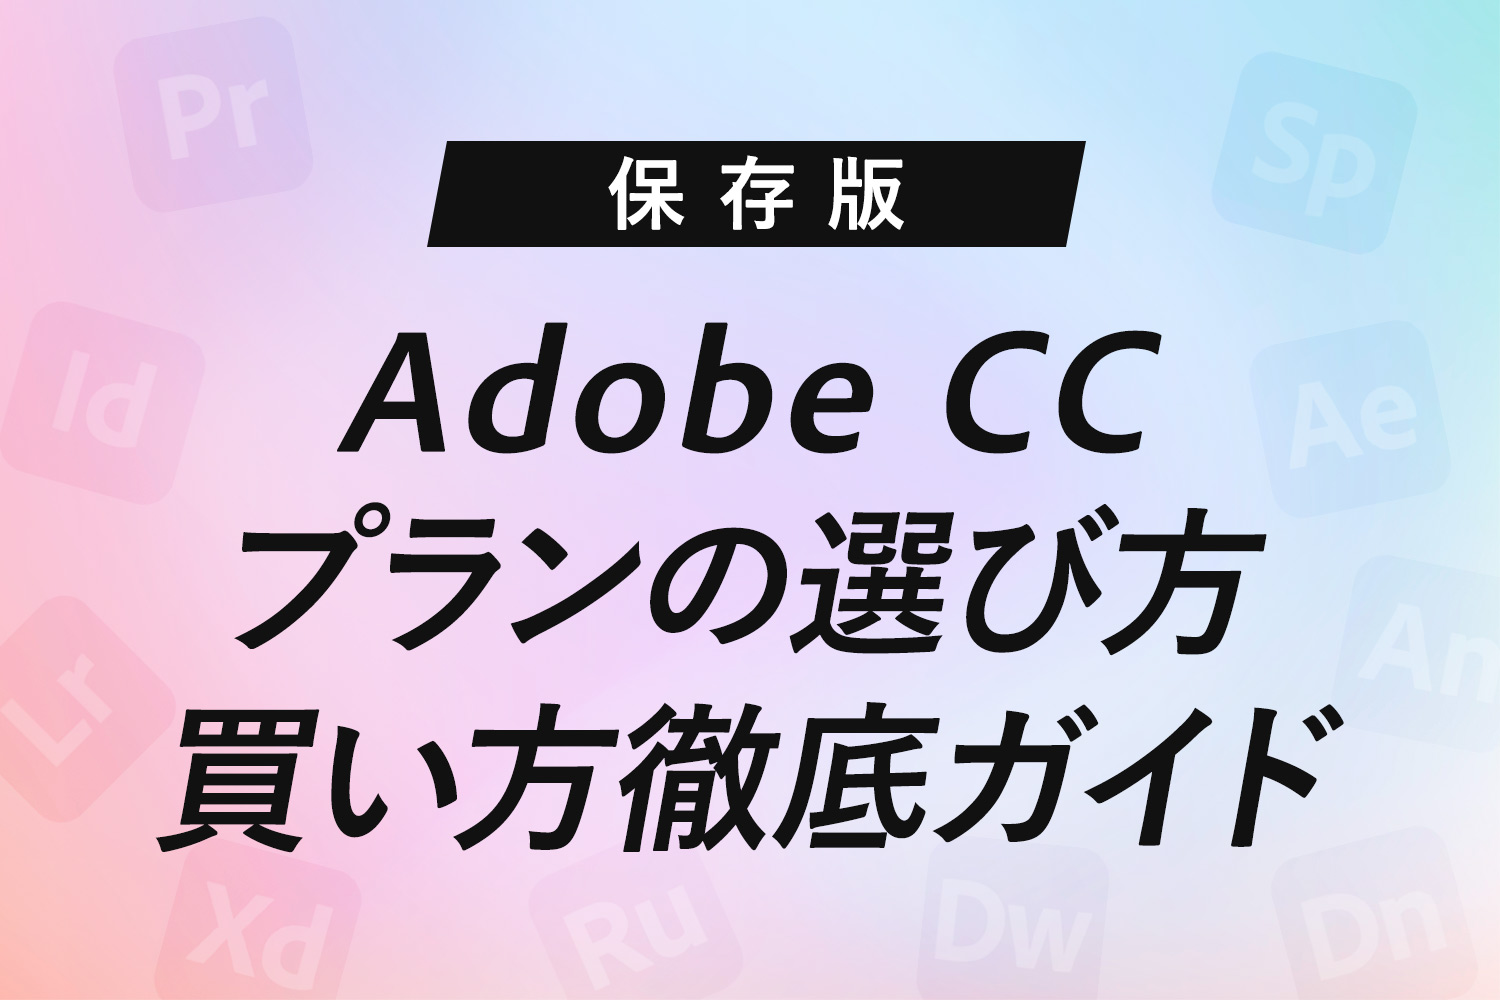 【保存版】Adobe CCの絶対に損しないプランの選び方・買い方徹底ガイド